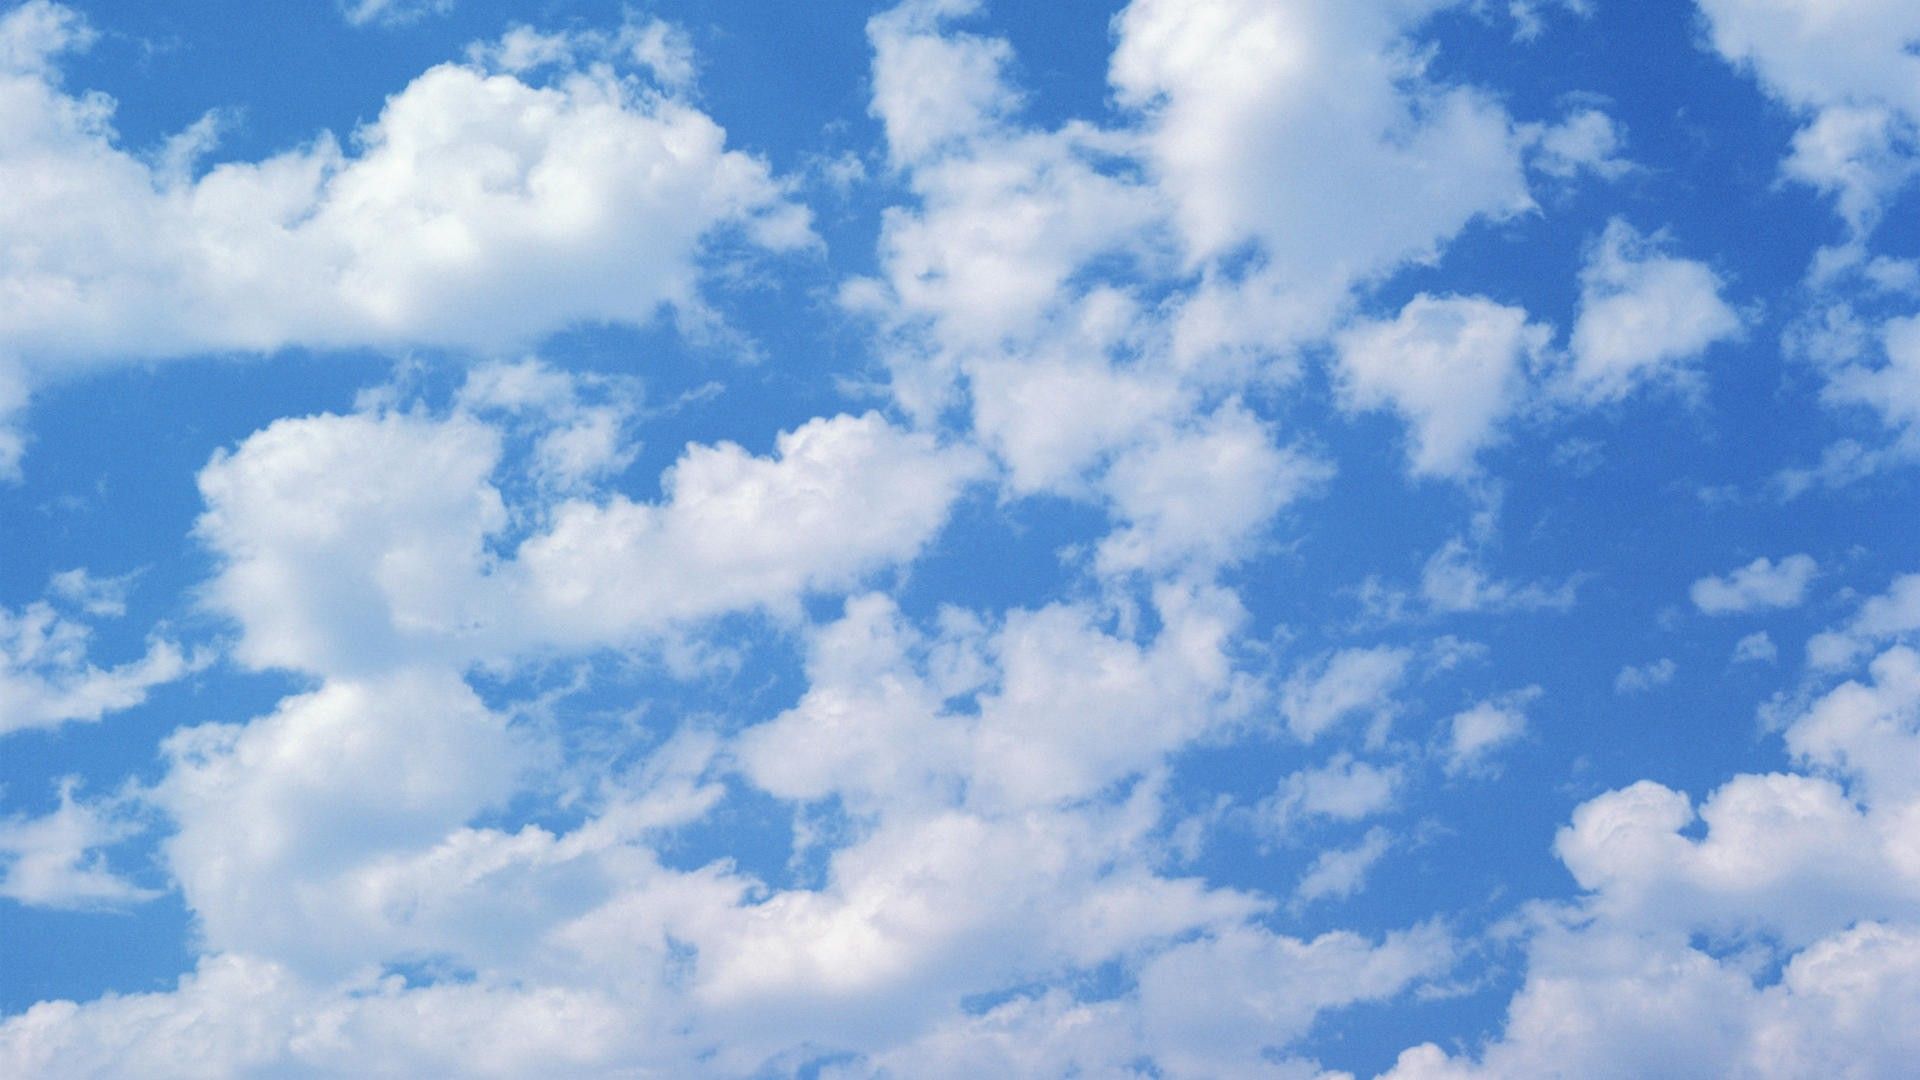 Cloud Wallpaper. Cloud Kingdom Hearts Wallpaper, Toy Story Cloud Wallpaper and Cloud Wallpaper